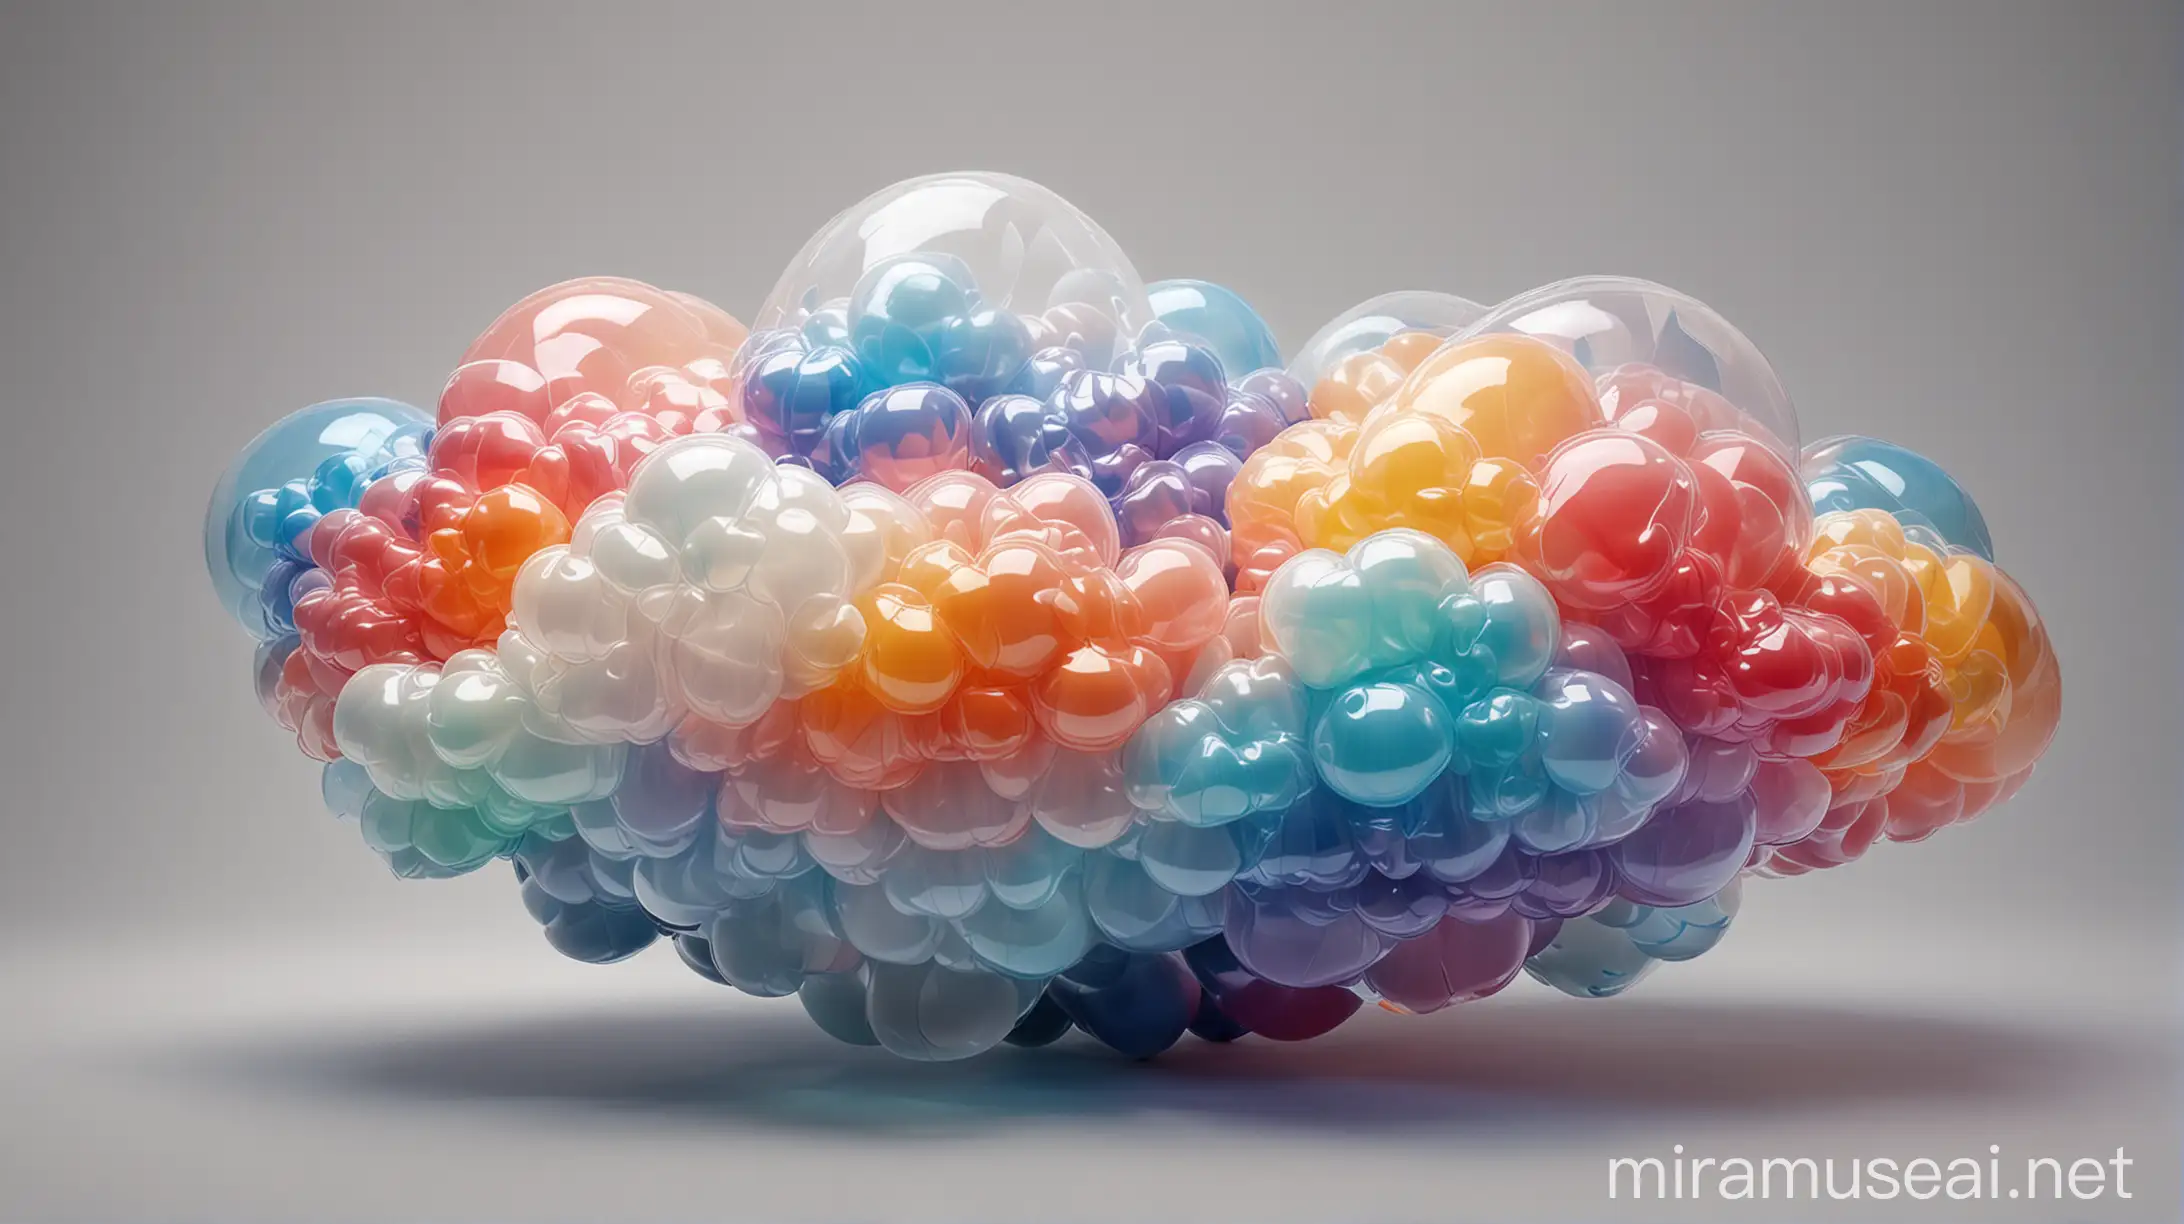 арт - объект - цветное облако с прозрачными частями из надувных изогнутых трубок